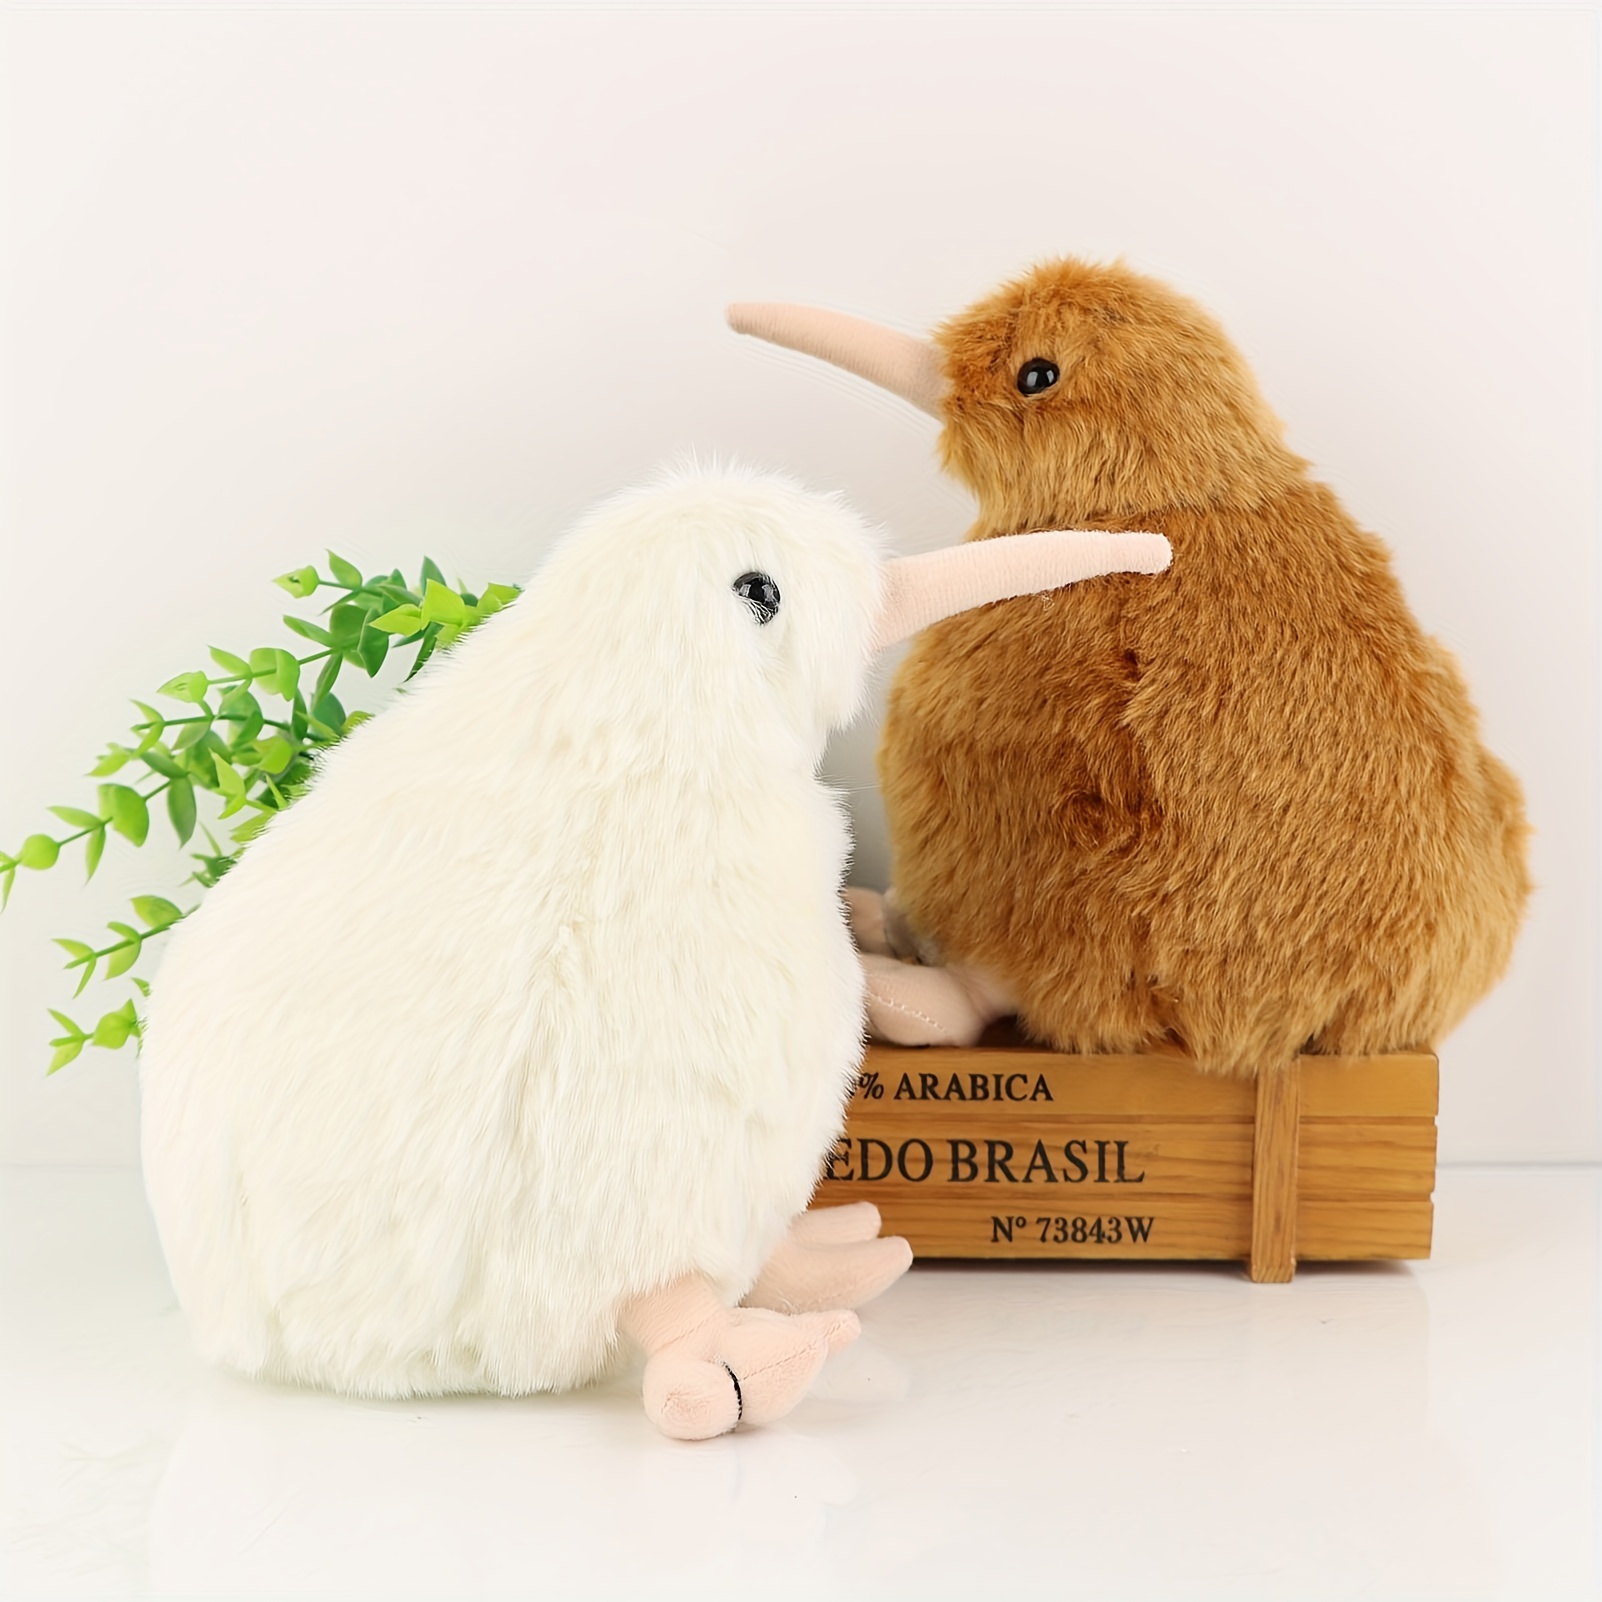 Lifelike Kiwi Bird Plush Toy Cute Stuffed Animal Toy - Temu